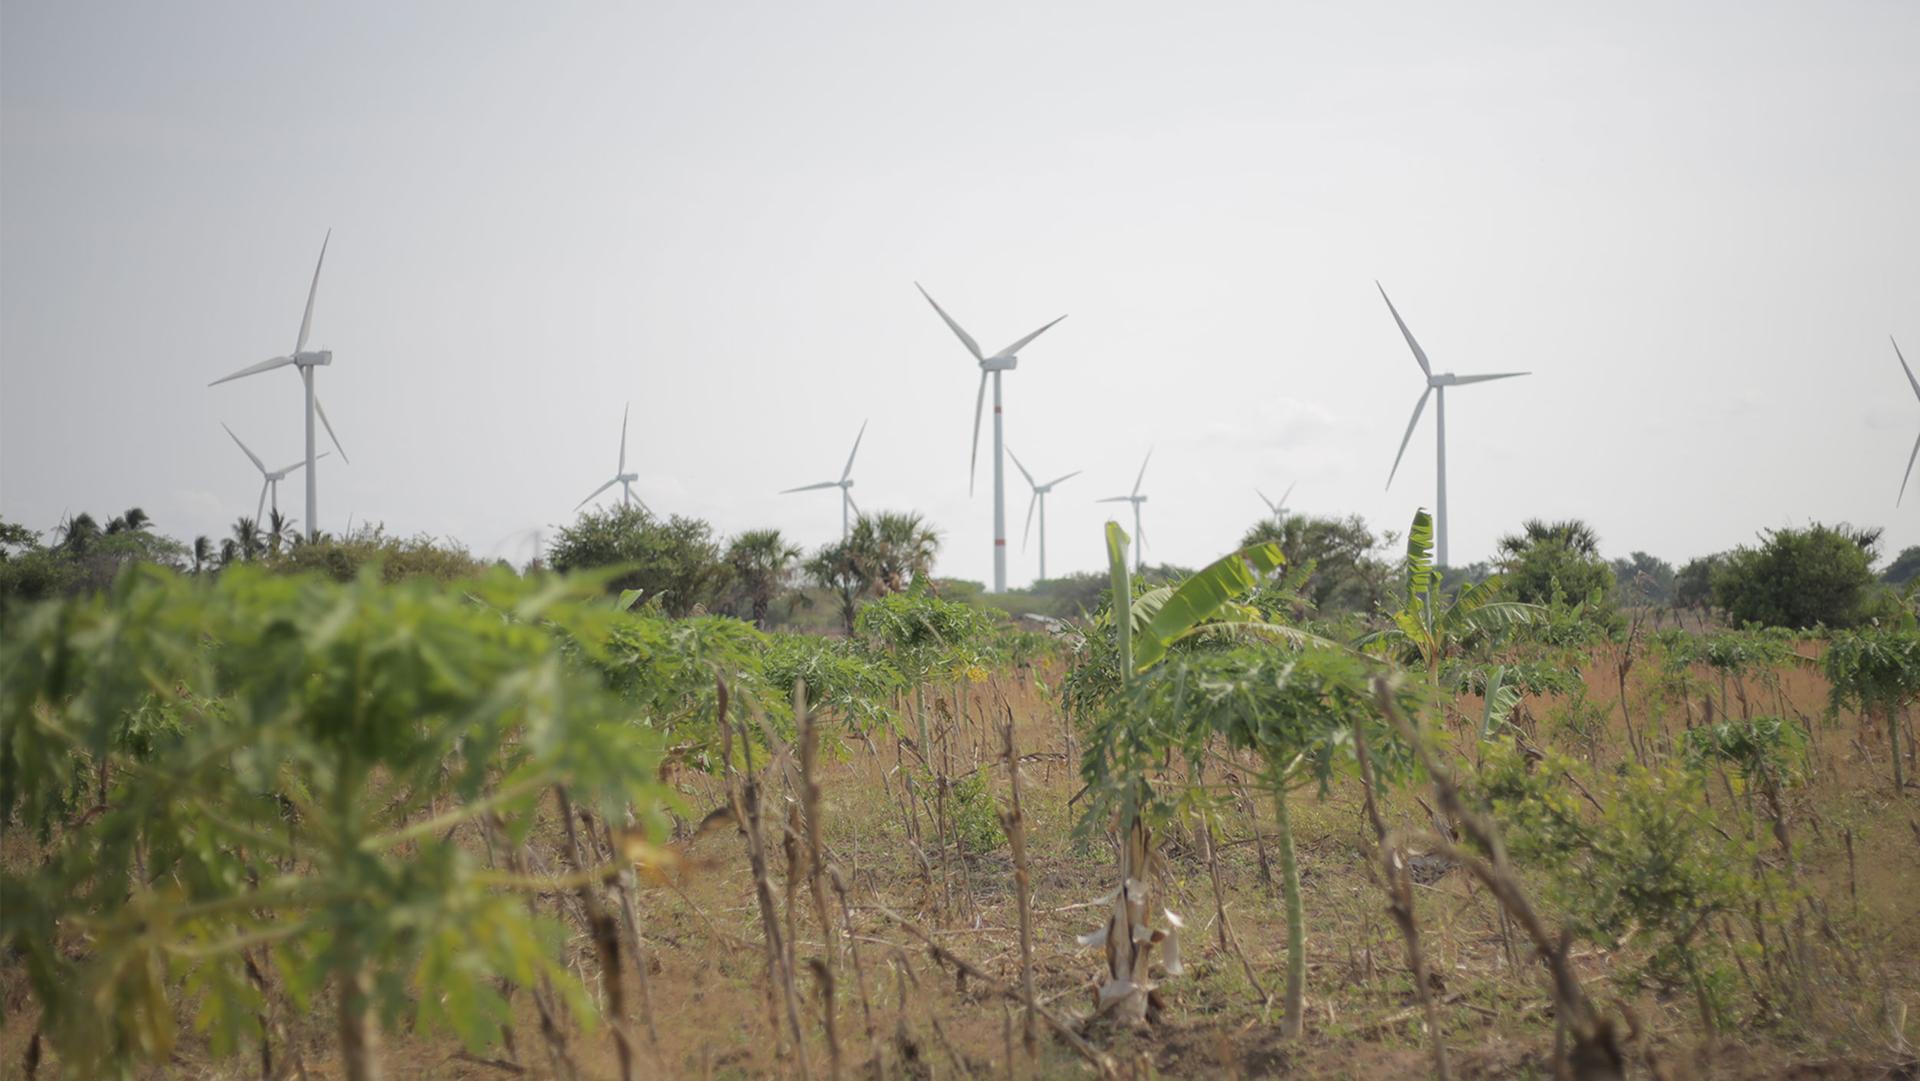 Wind generators near the Indigenous town of Juchitán de Zaragoza in Mexico.